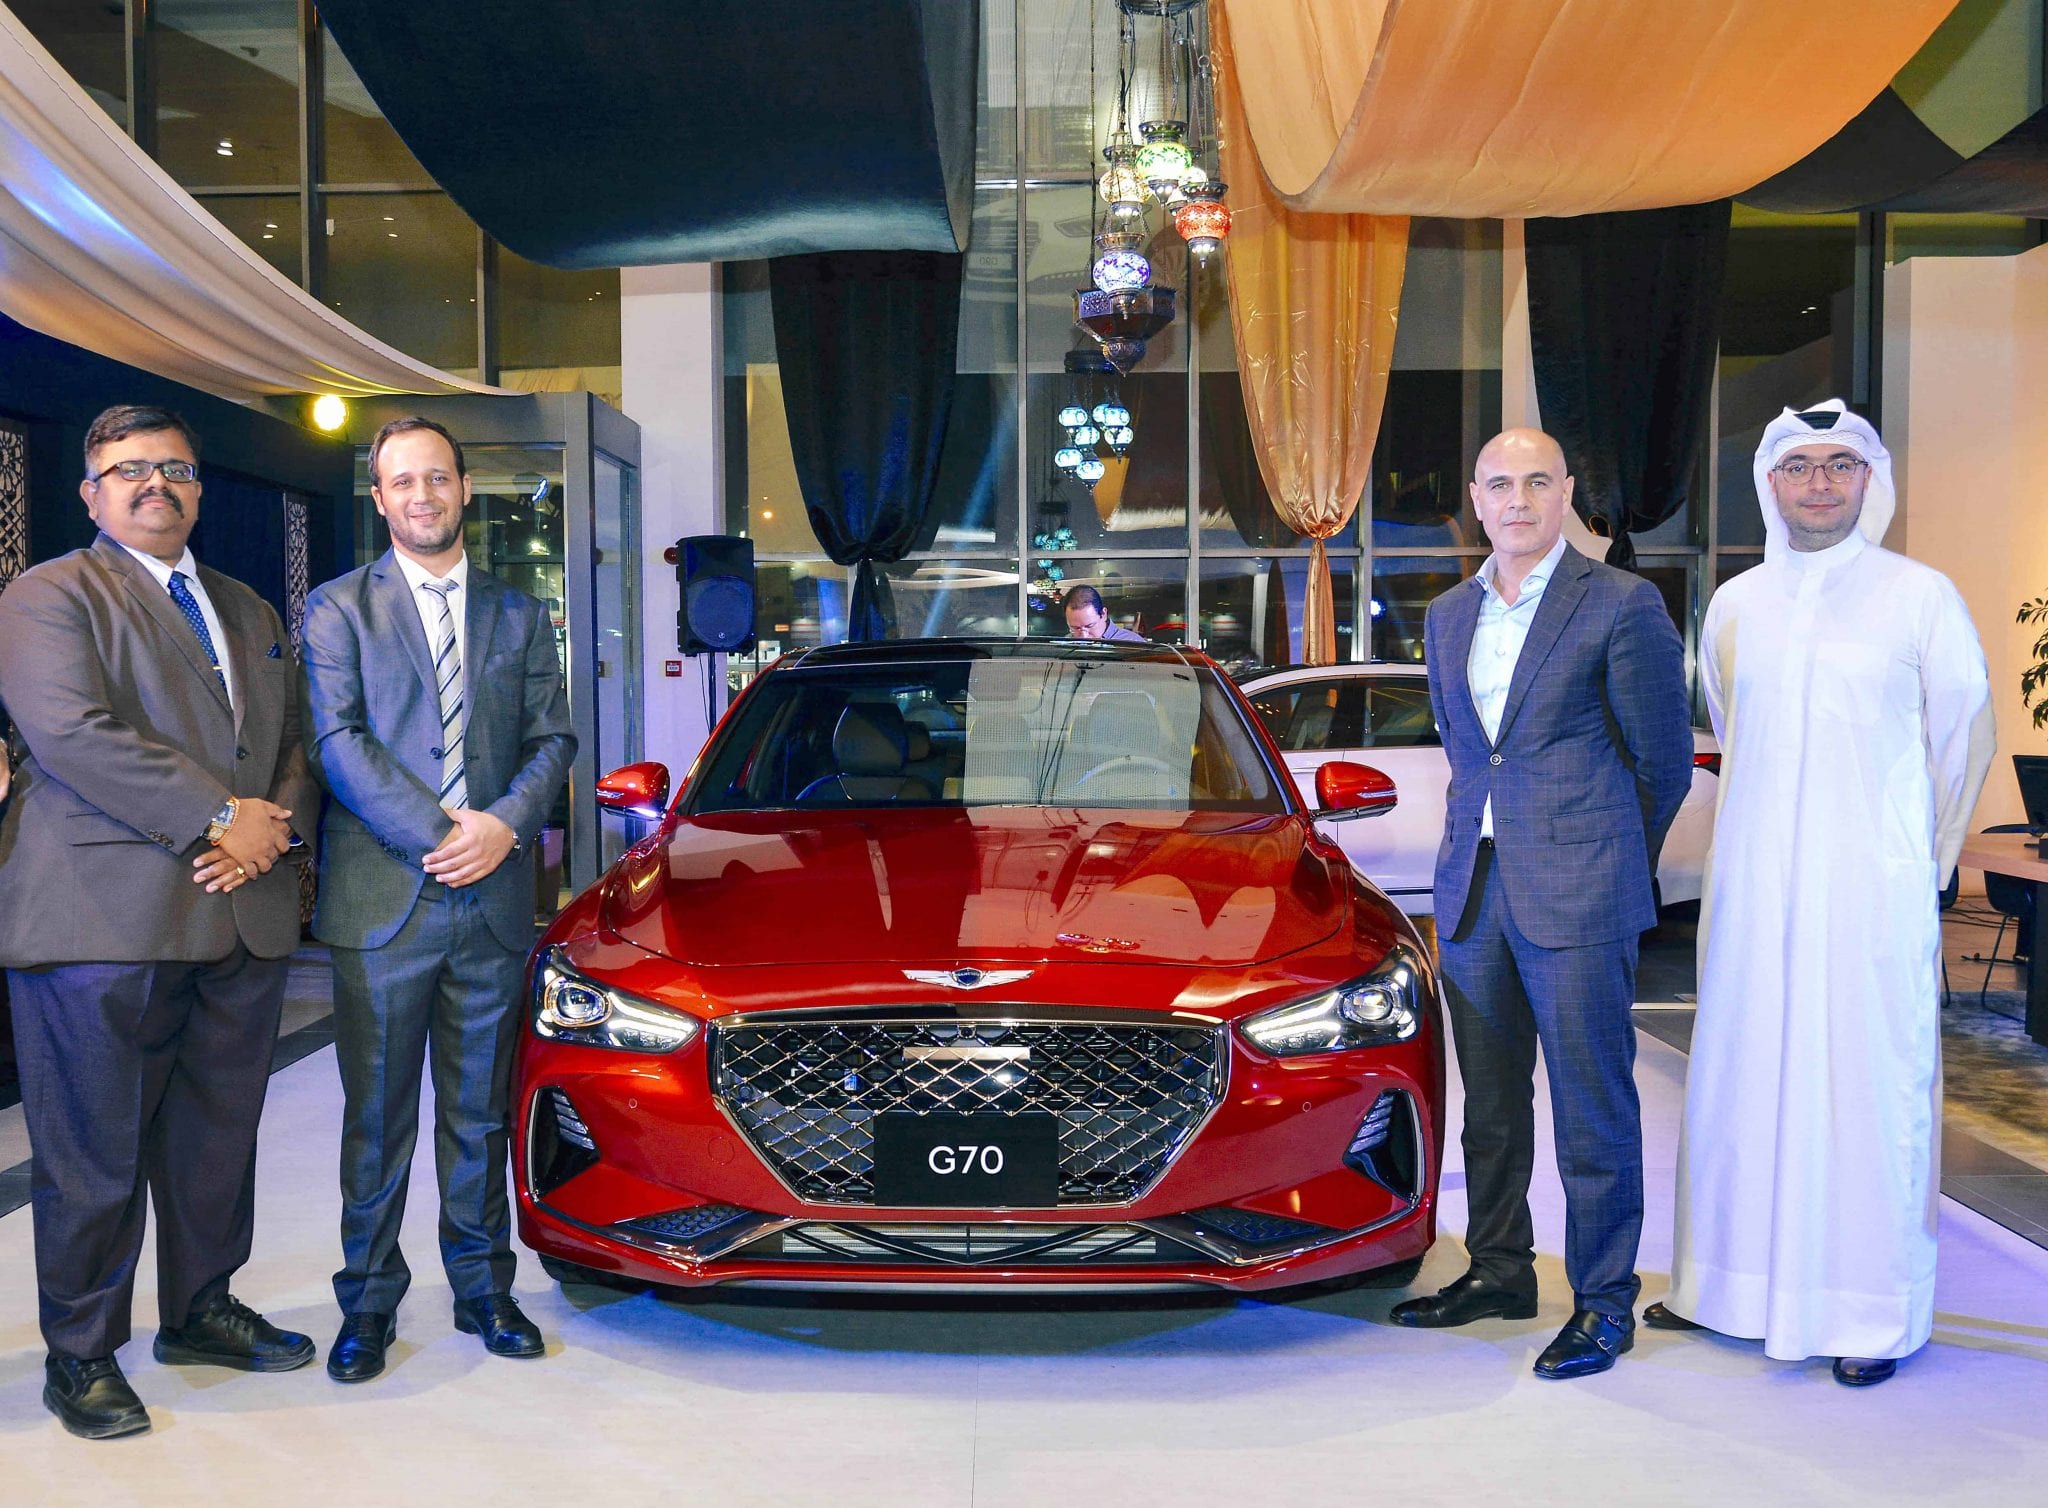 Genesis G70 luxury sedan arrives in Qatar